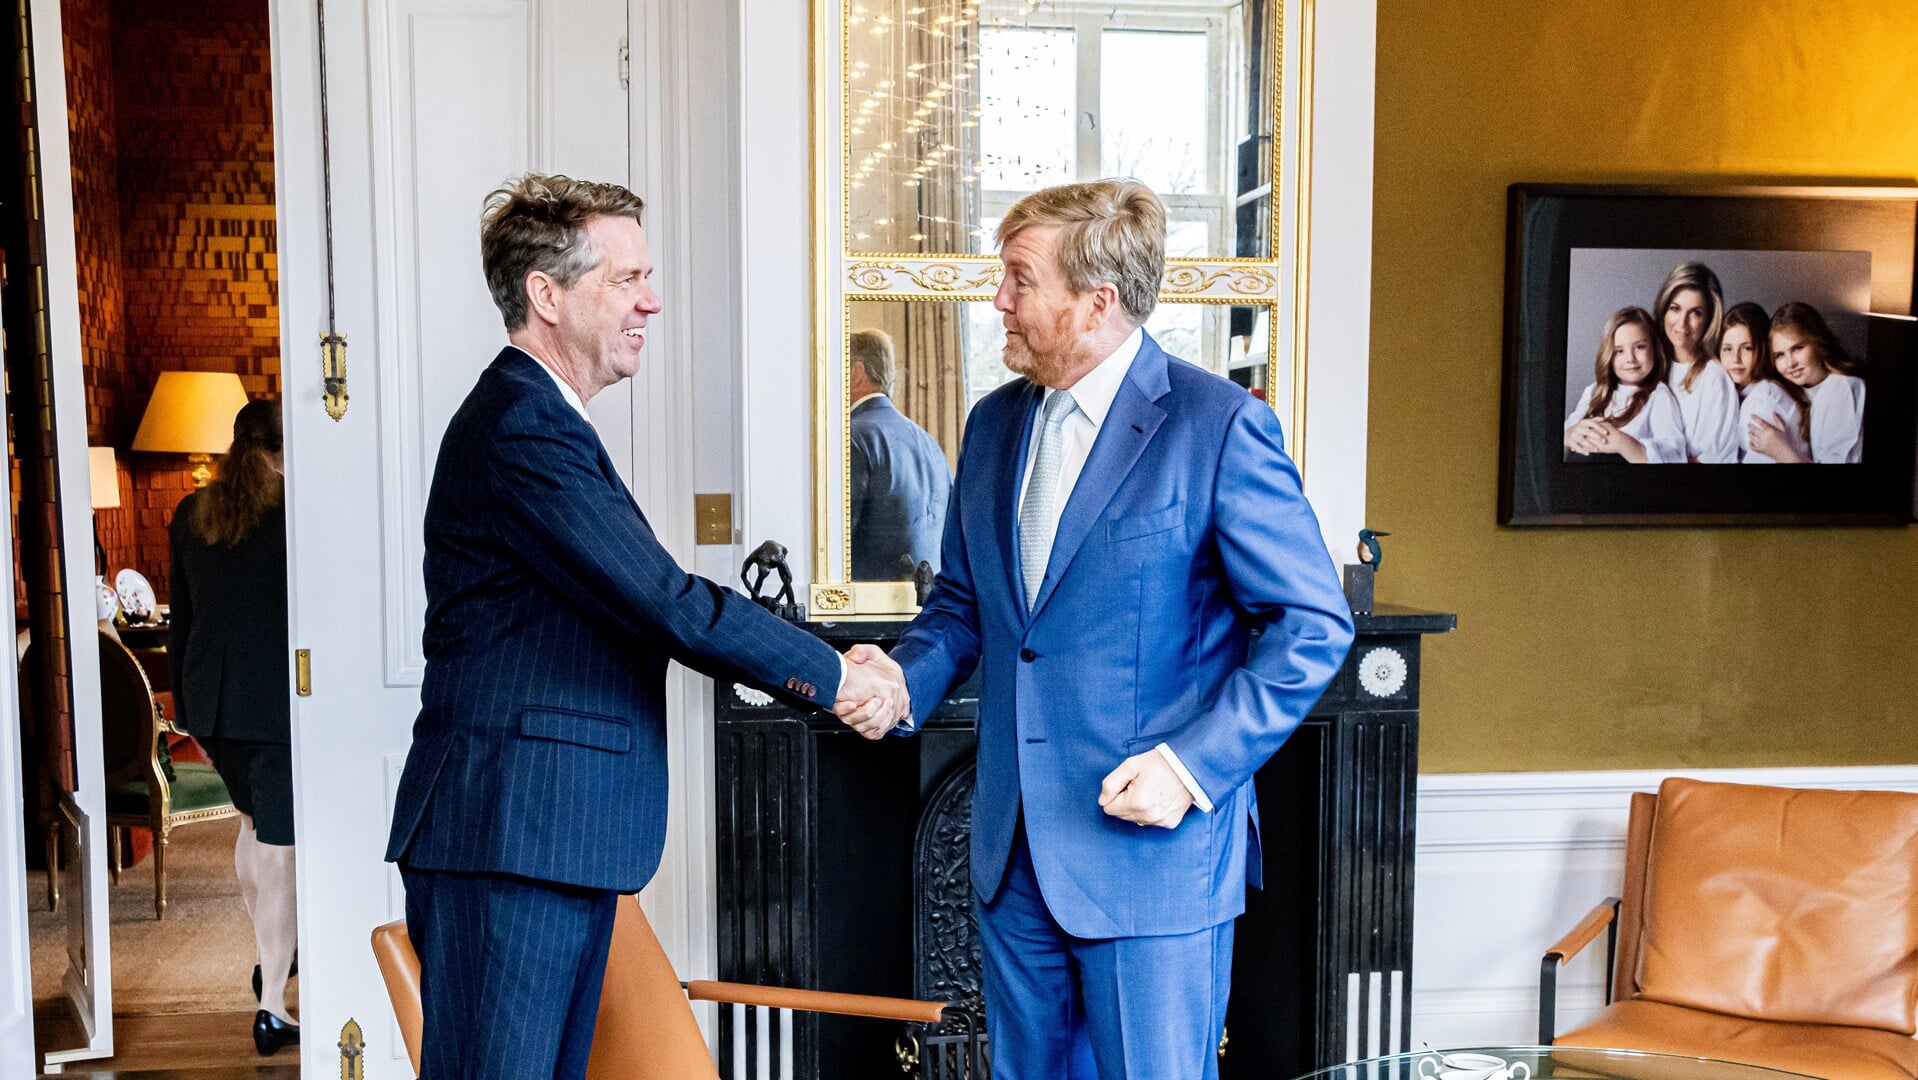 PVV-Kamervoorzitter Martin Bosma is al jaren een verklaard fan van de koning. 'Hij doet het geweldig.'